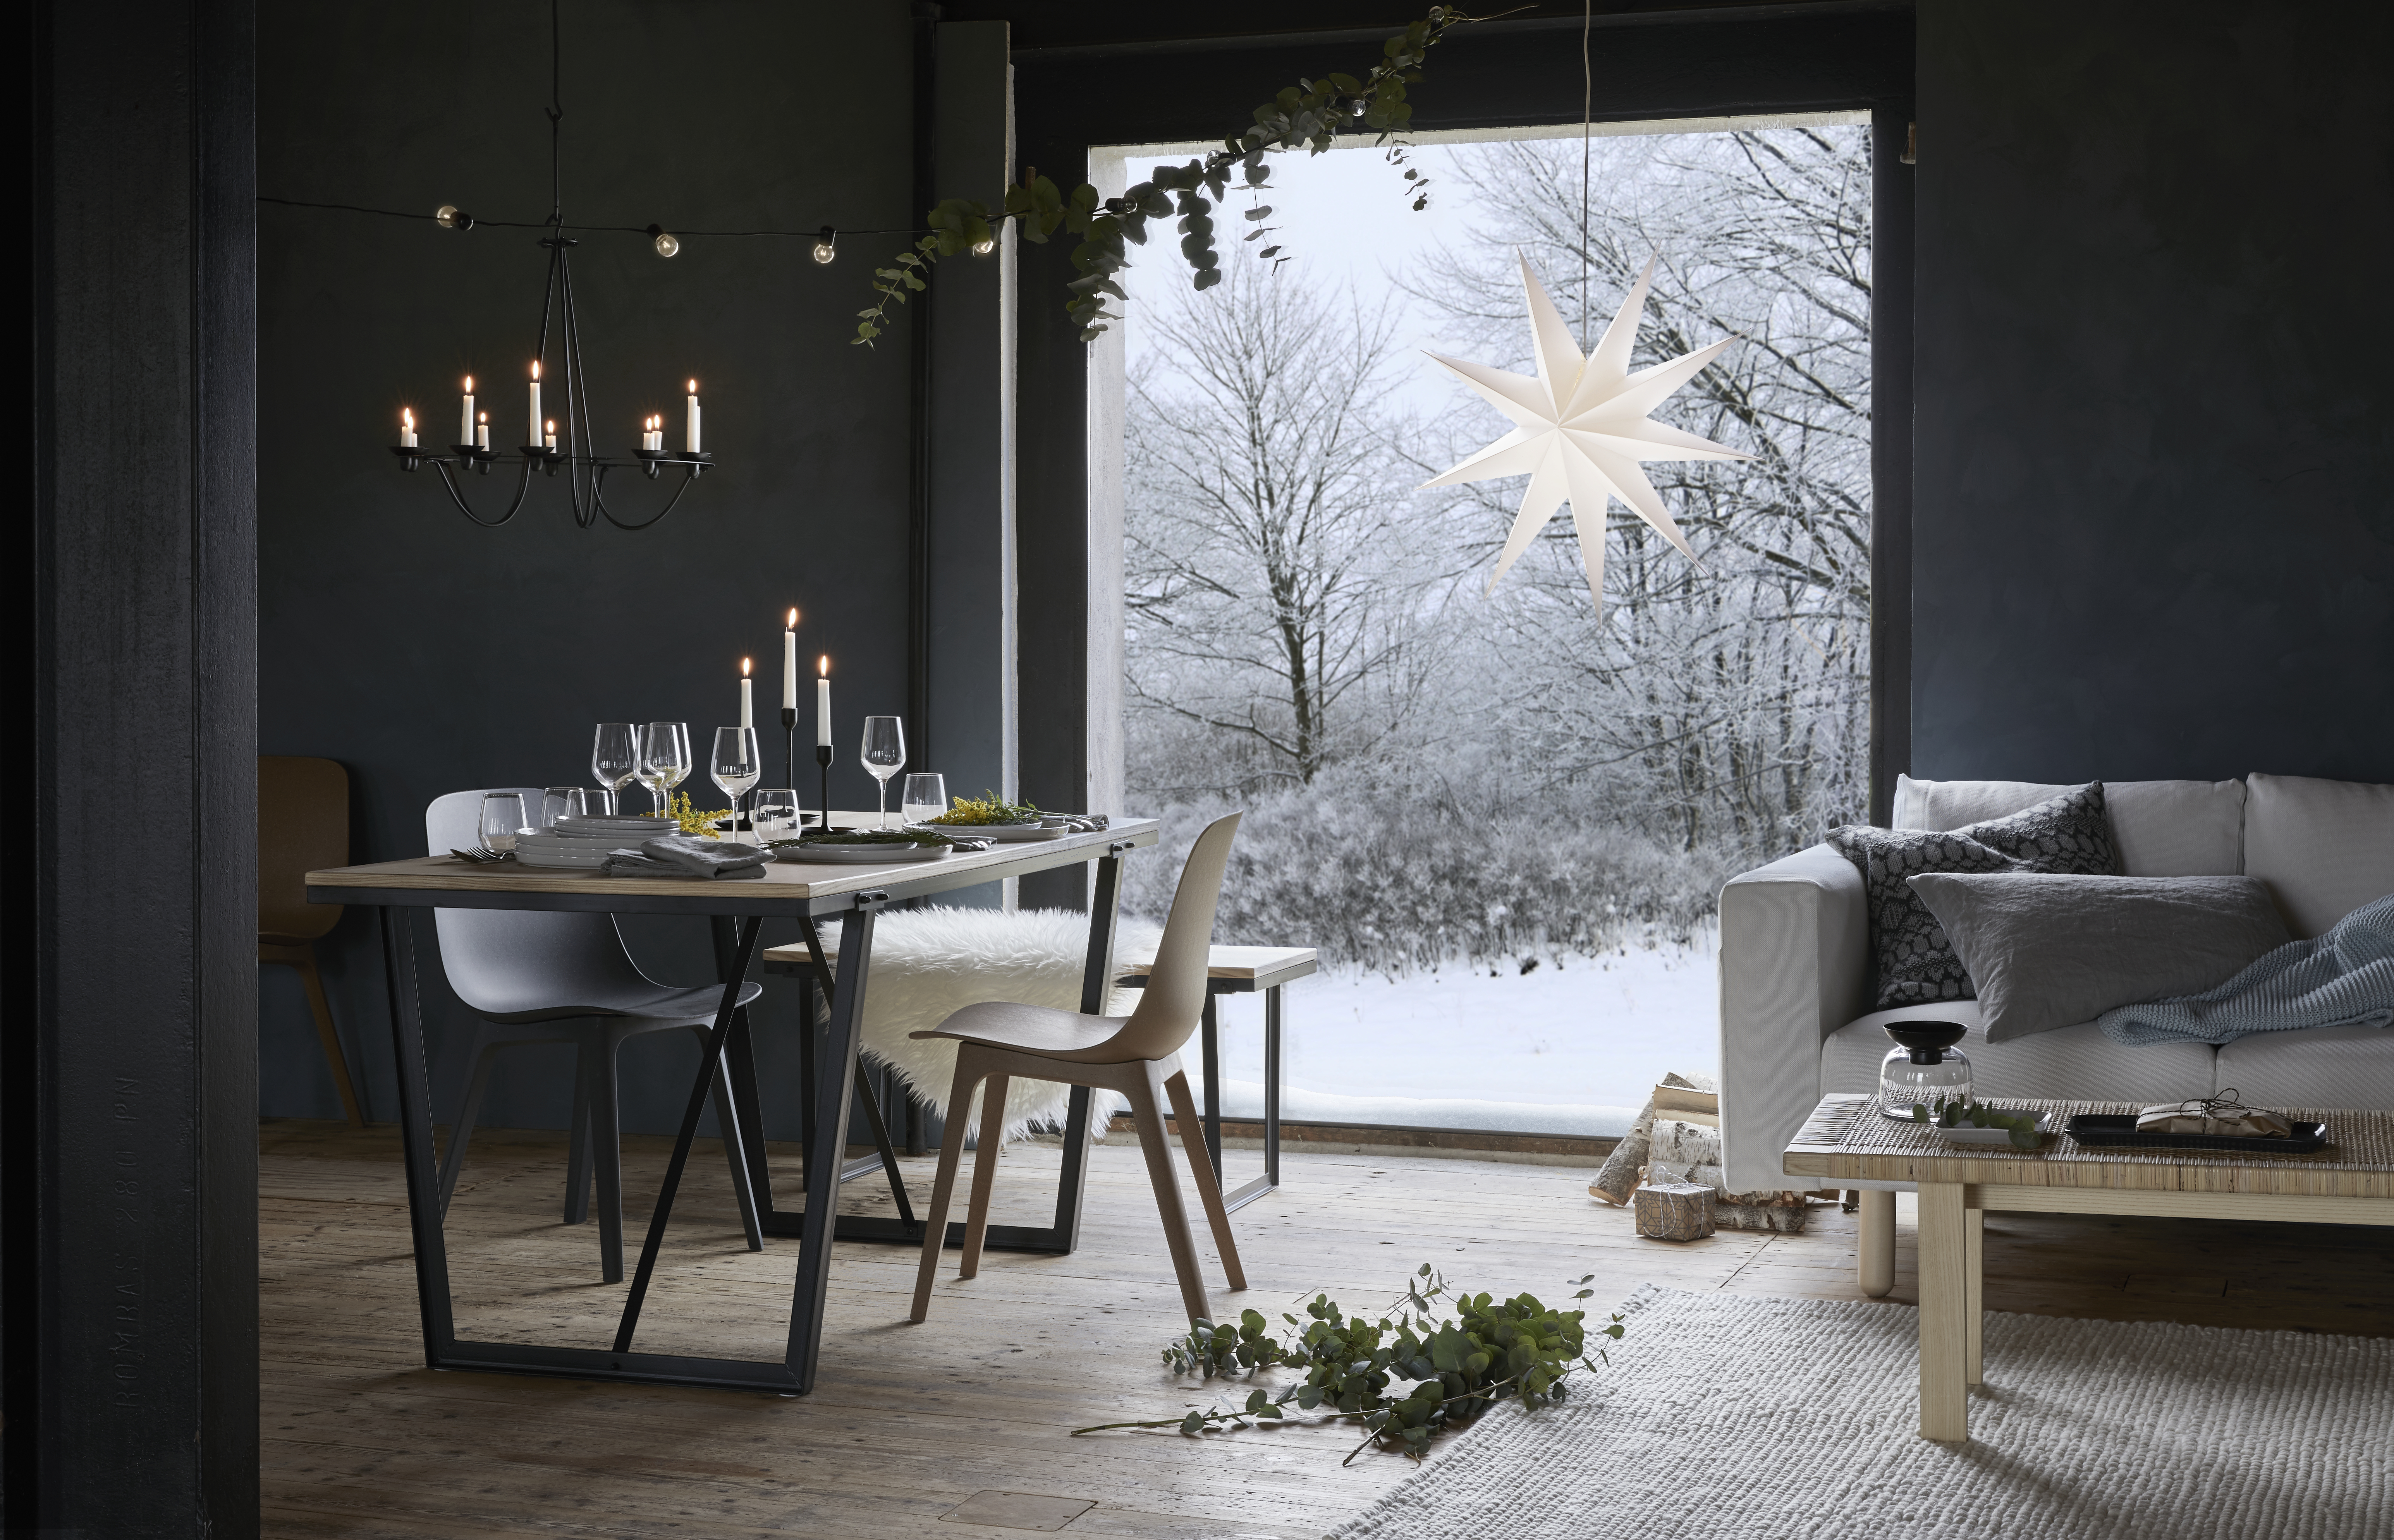 Ilyen az IKEA karácsonyi kollekciója - fotók - Blikk